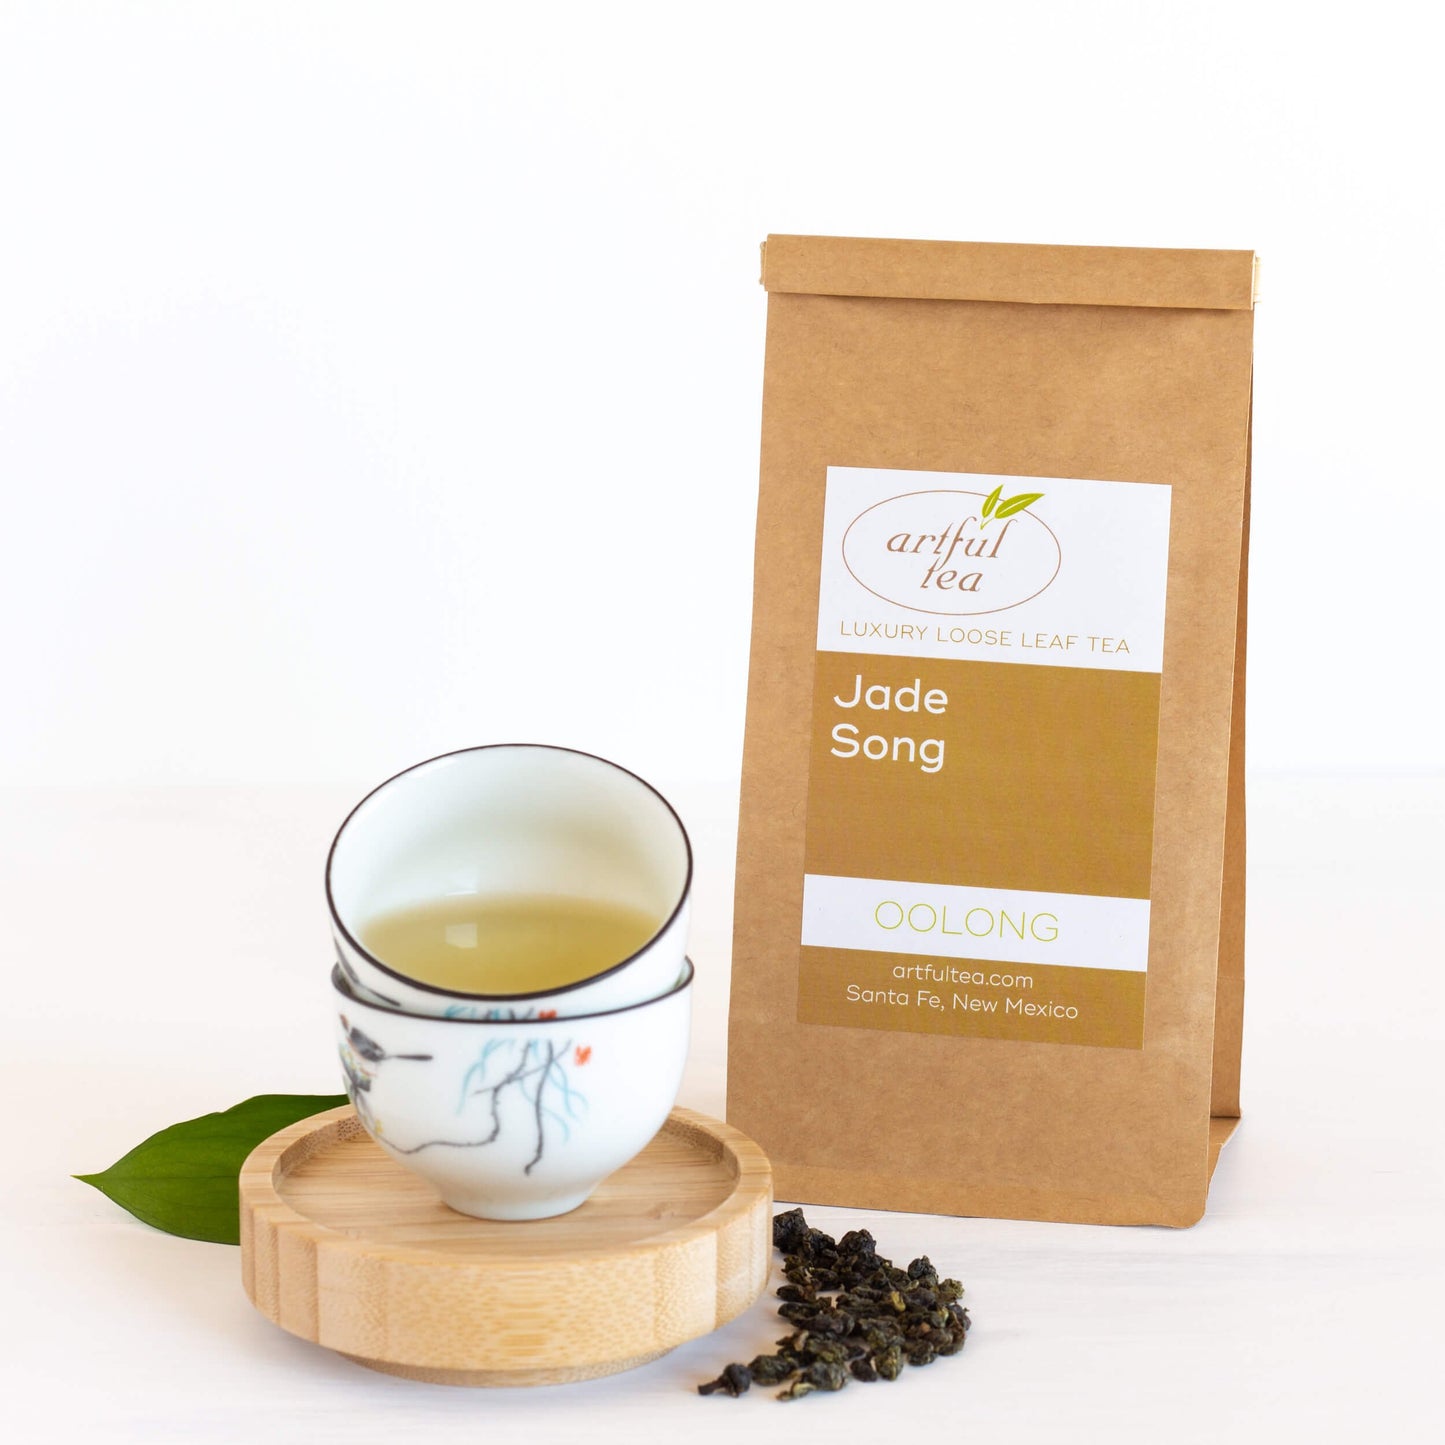 Jade Song Oolong Tea